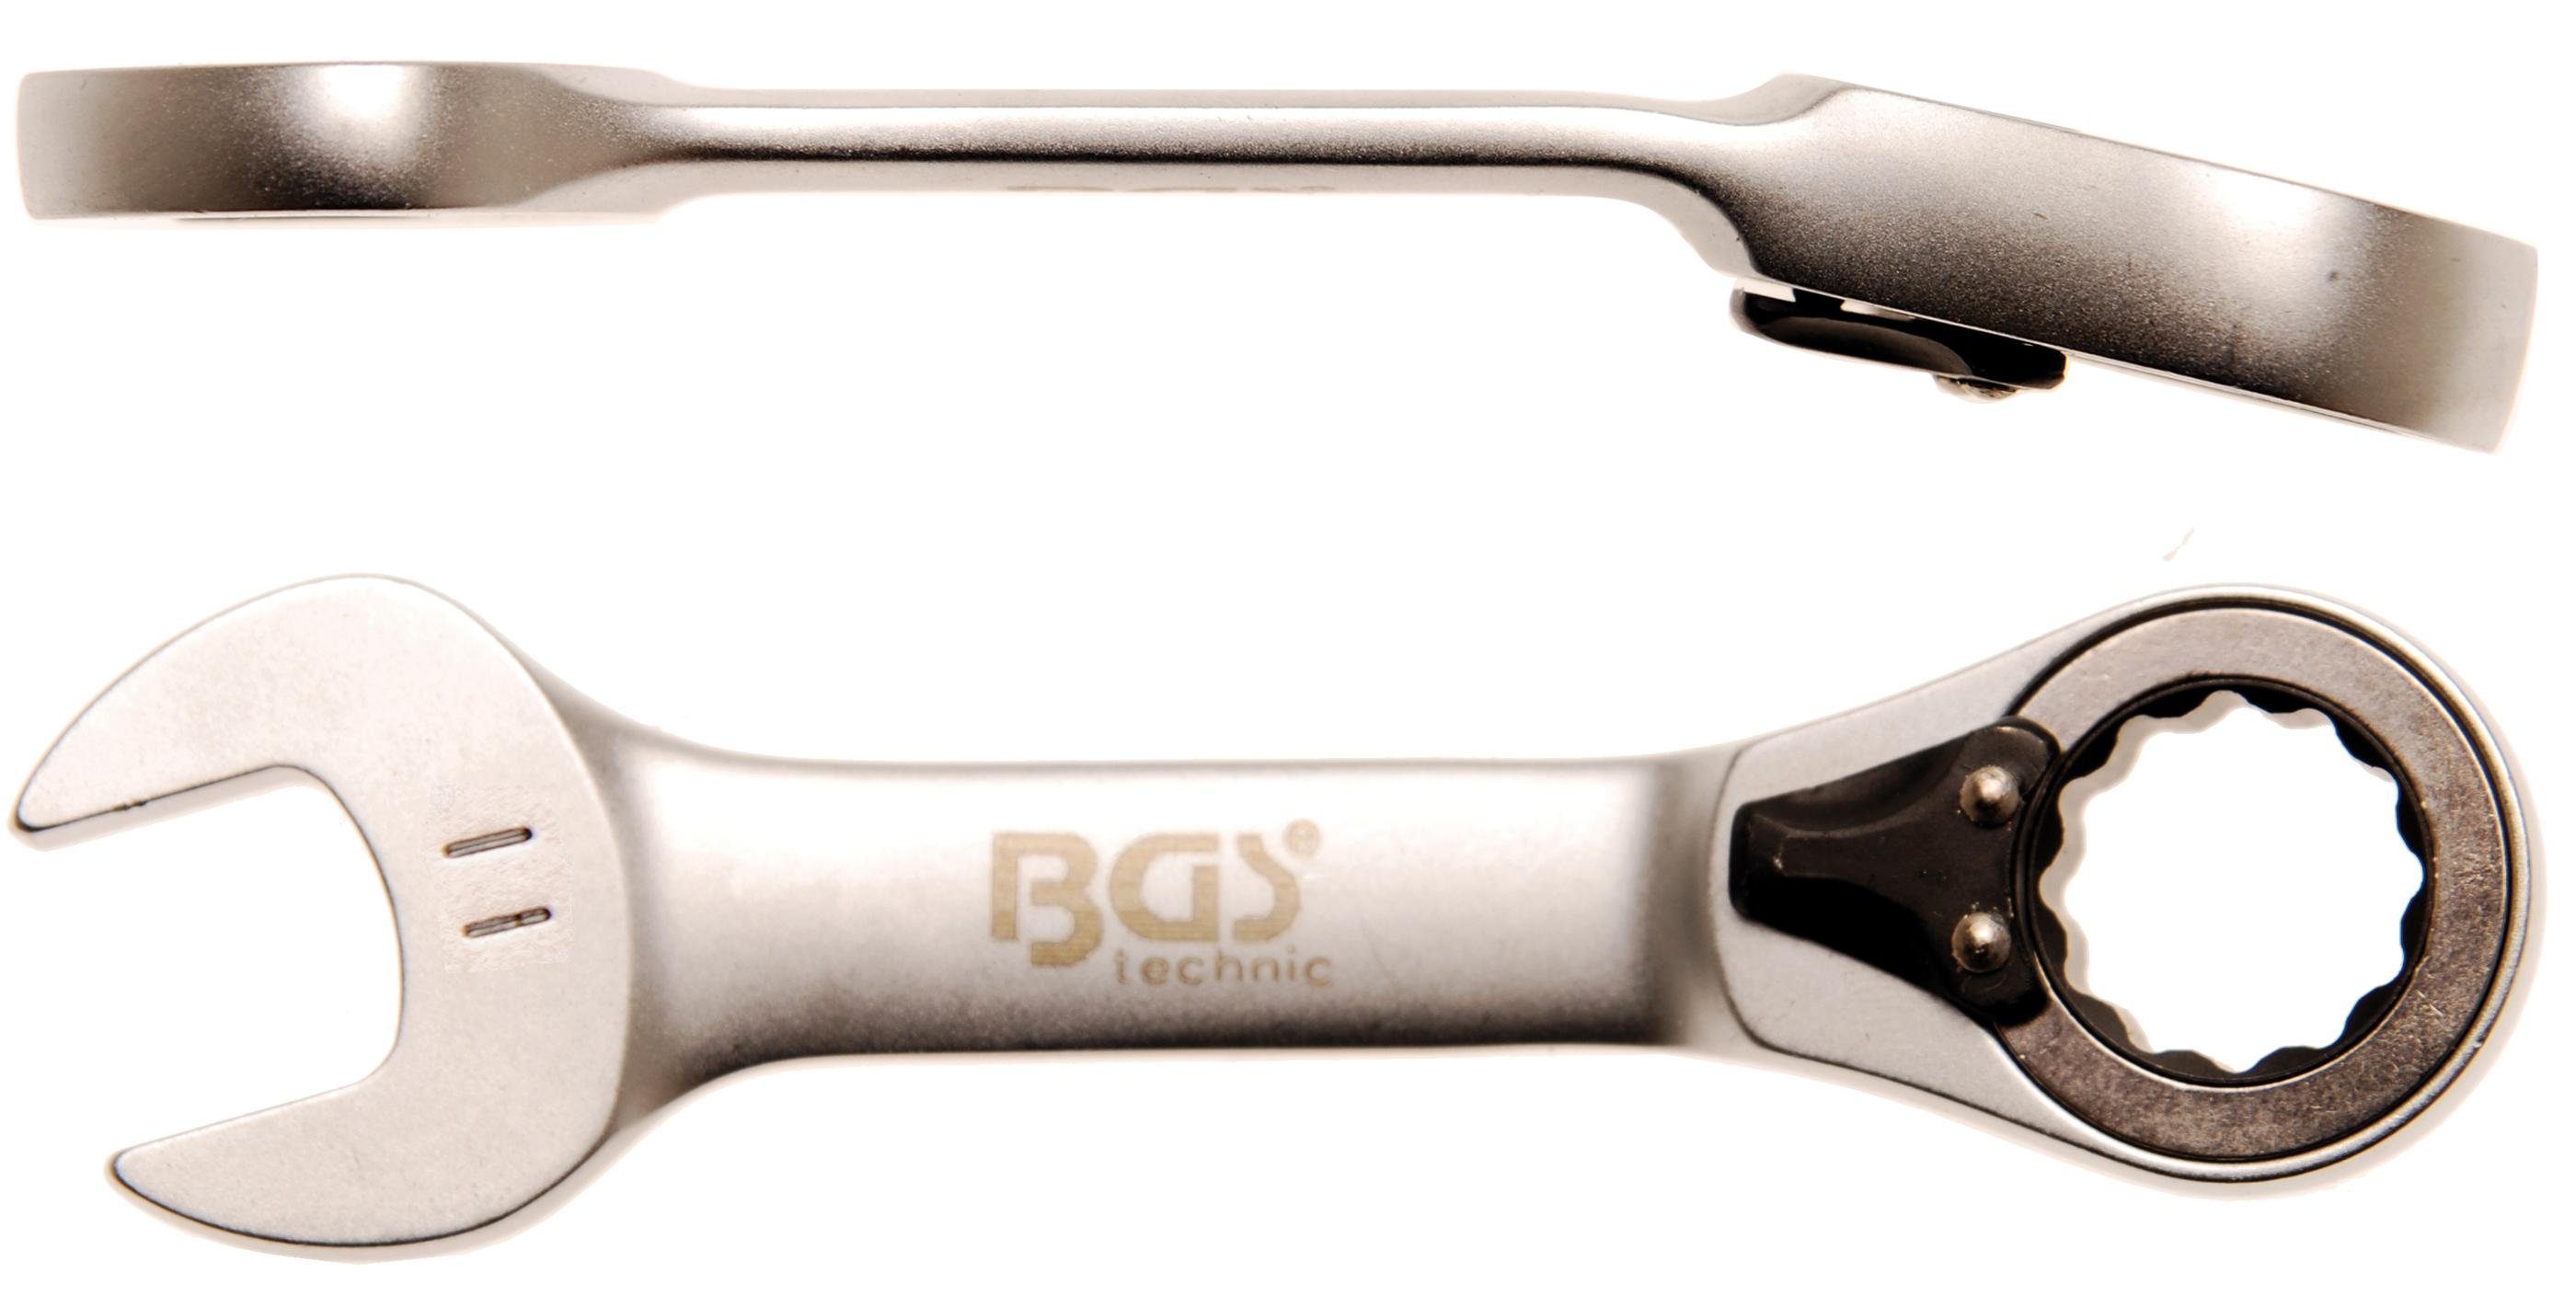 BGS technic Stecknuss Ratschenring-Maulschlüssel, kurz, umschaltbar, SW 11 mm